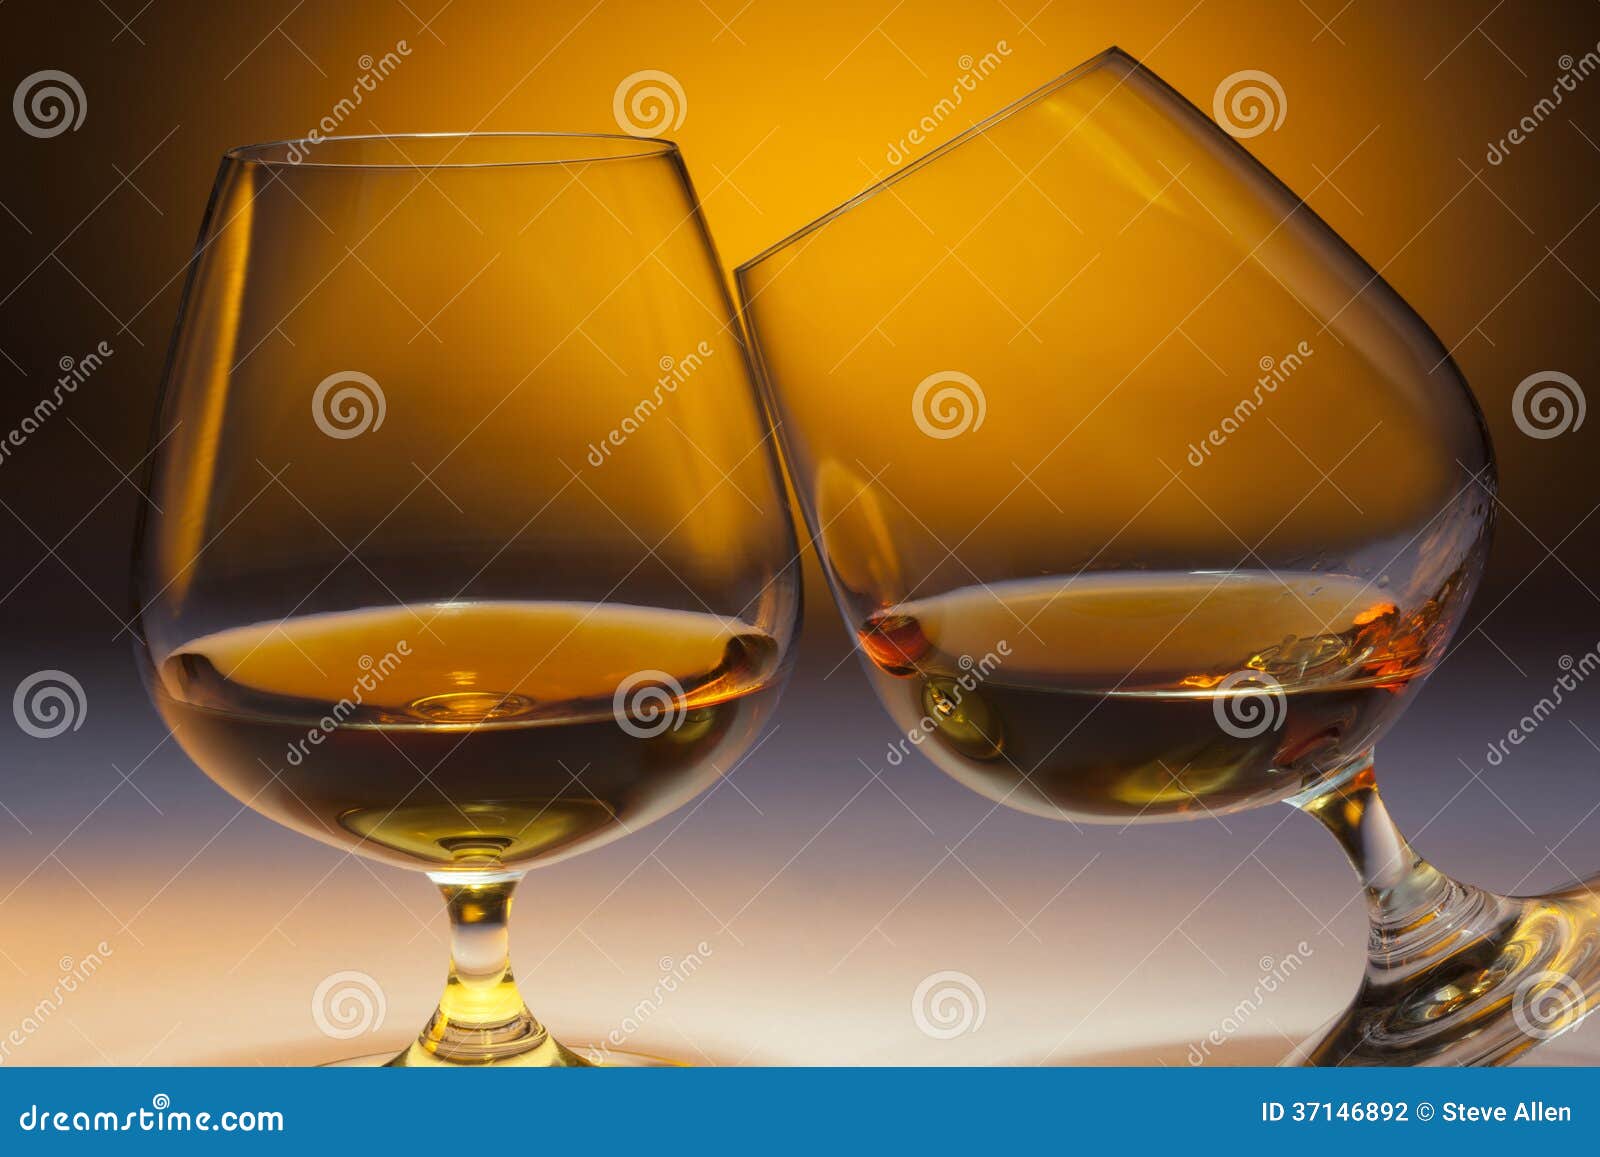 french brandy - cognac